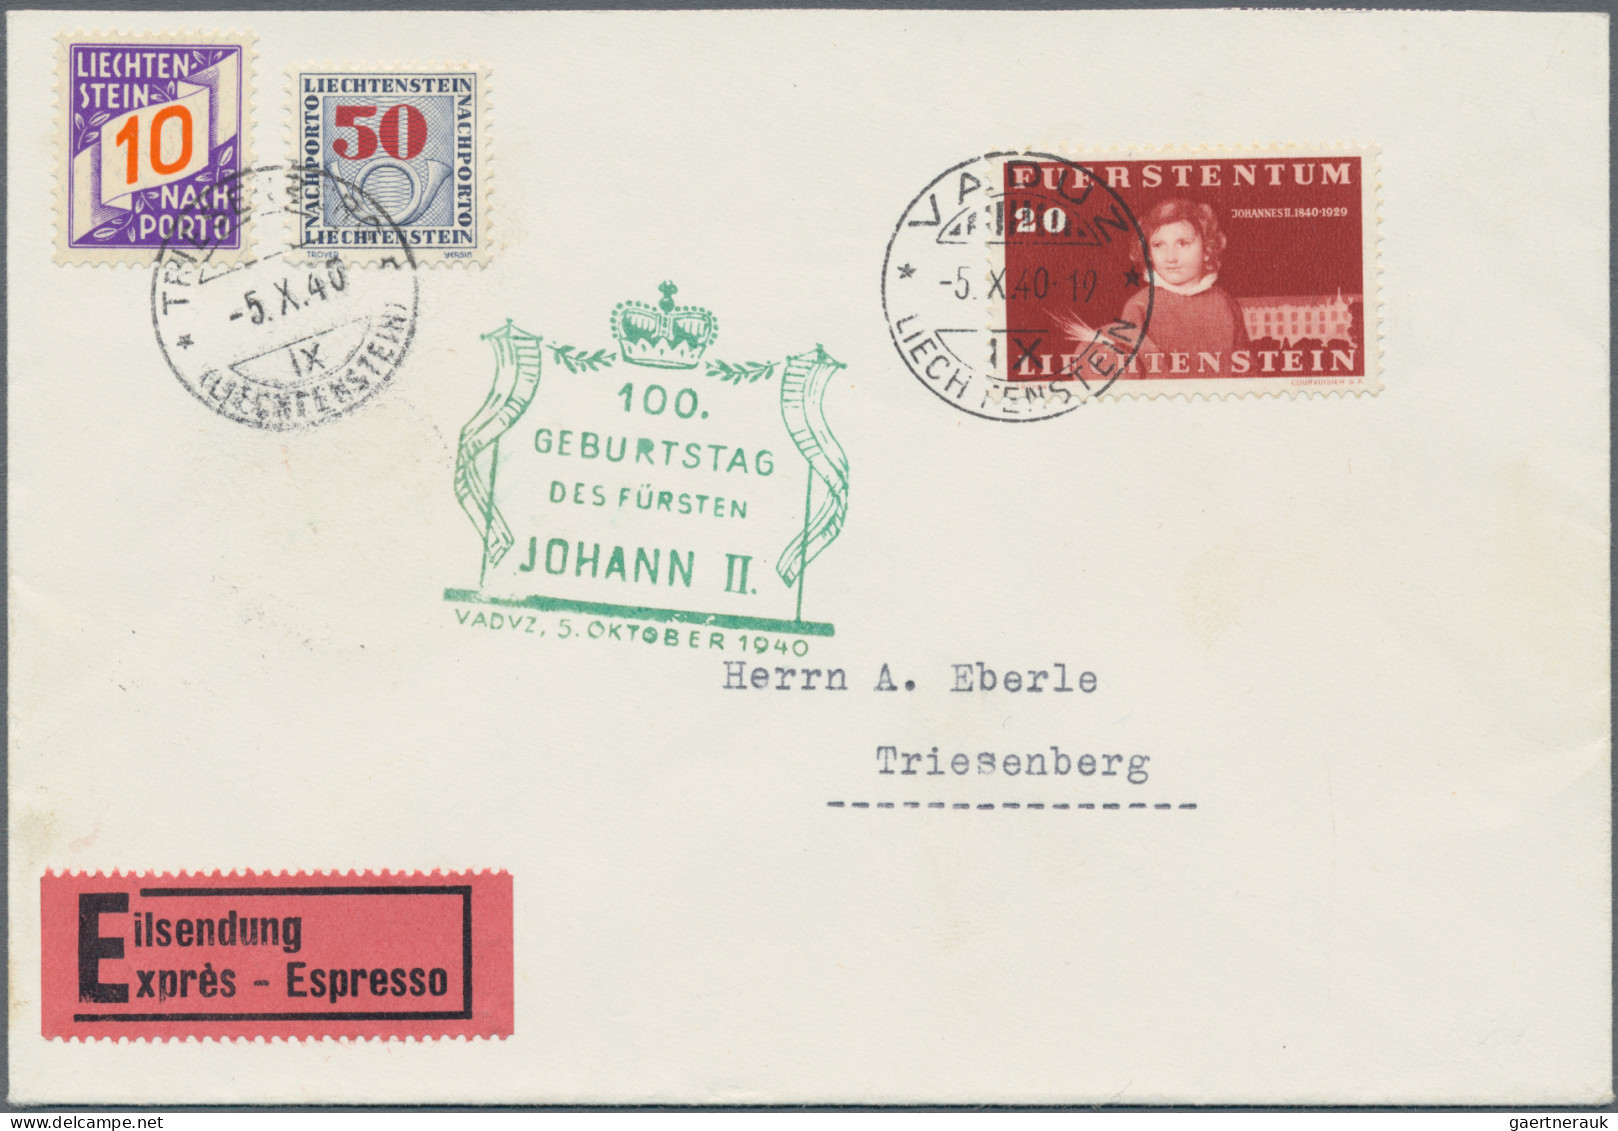 Liechtenstein - Portomarken: 1940/1941, Portomarken II U. III., 8 Unterfrankiert - Impuesto